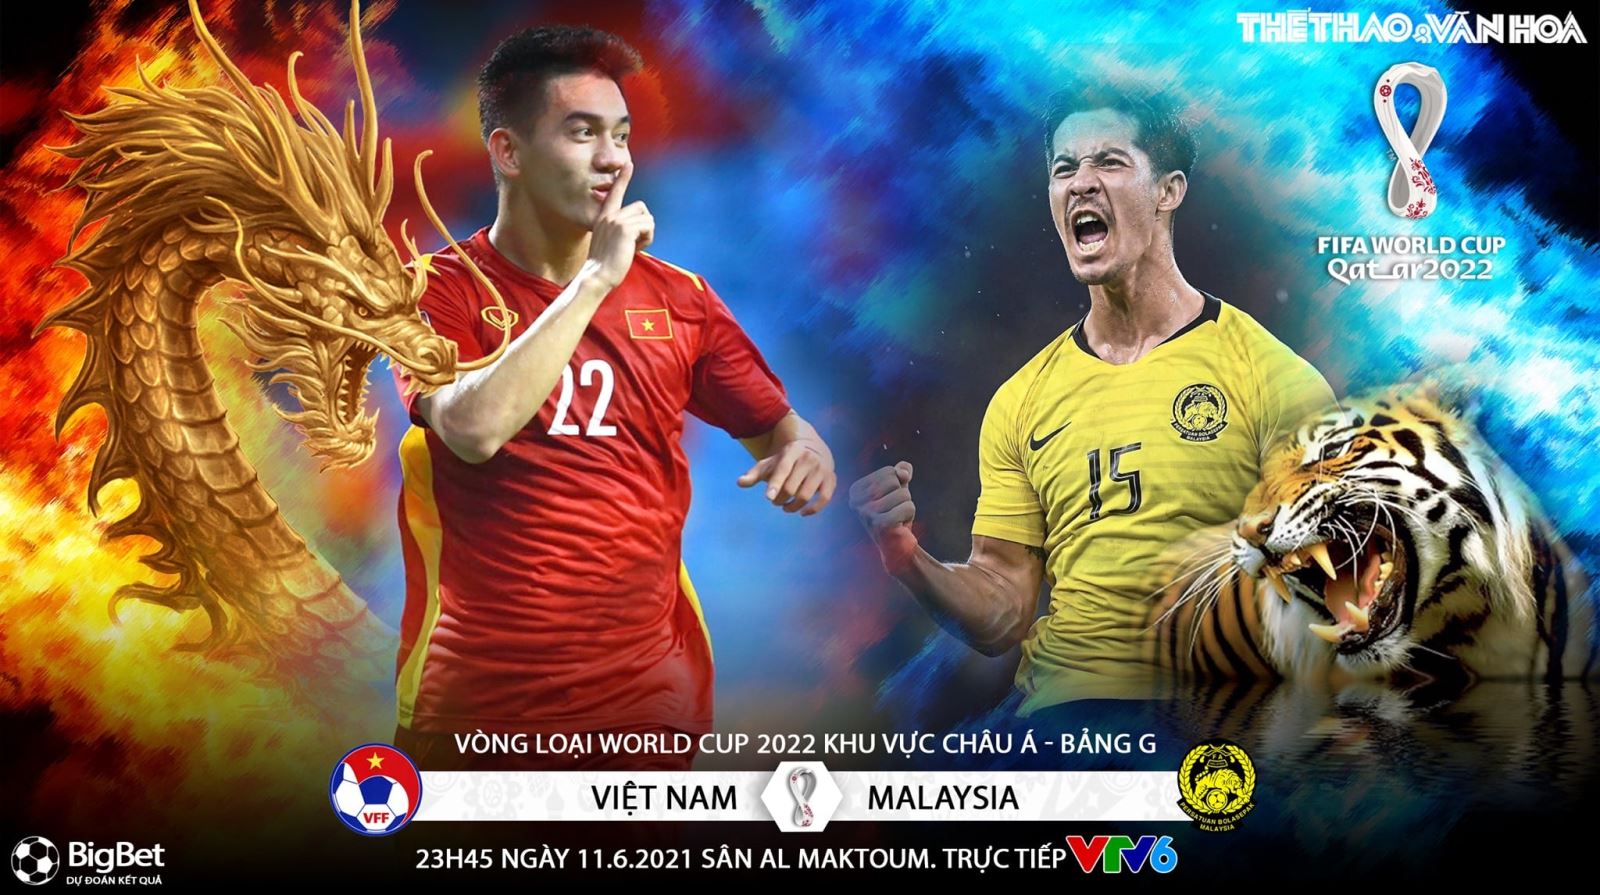 Lịch thi đấu bóng đá Việt Nam - Malaysia, Lịch thi đấu vòng loại World Cup 2022 bảng G khu vực châu Á, UAE vs Indonesia, VTV6, VTV5 trực tiếp bóng đá Việt Nam hôm nay